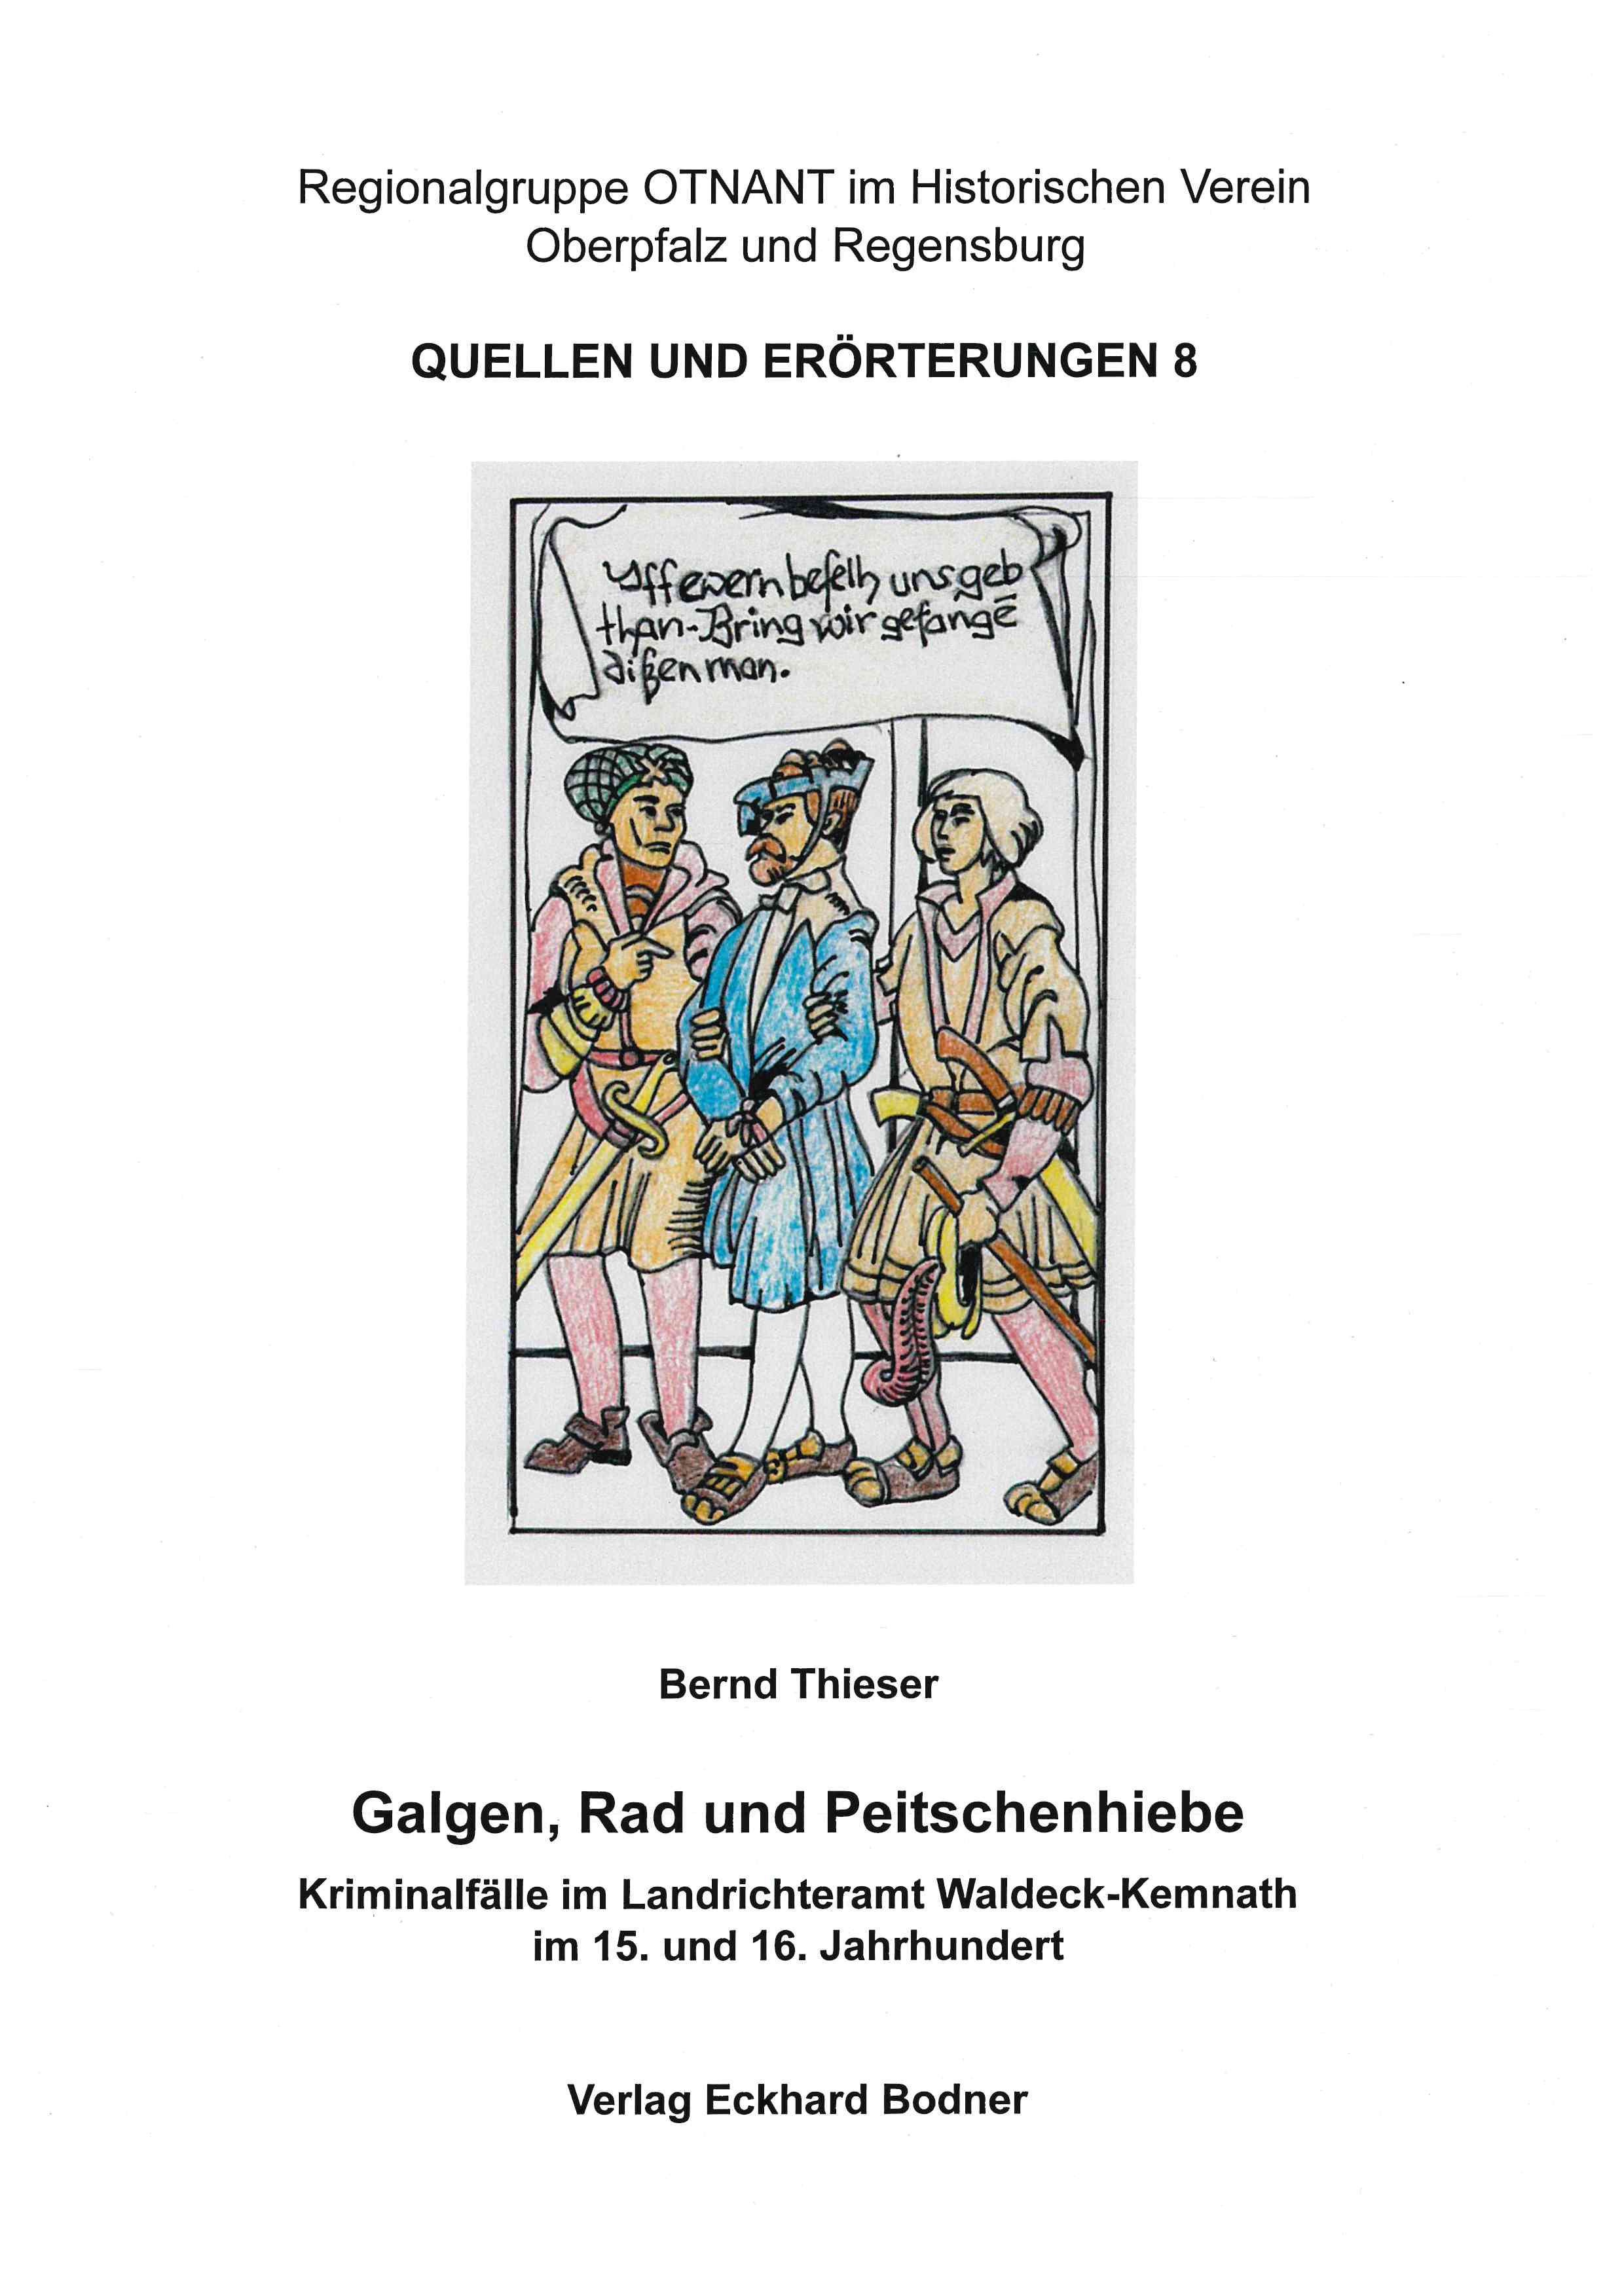 Cover Galgen, Rad und Peitschenhieb - OTNANT Quellen und Erörterung Bd. 8